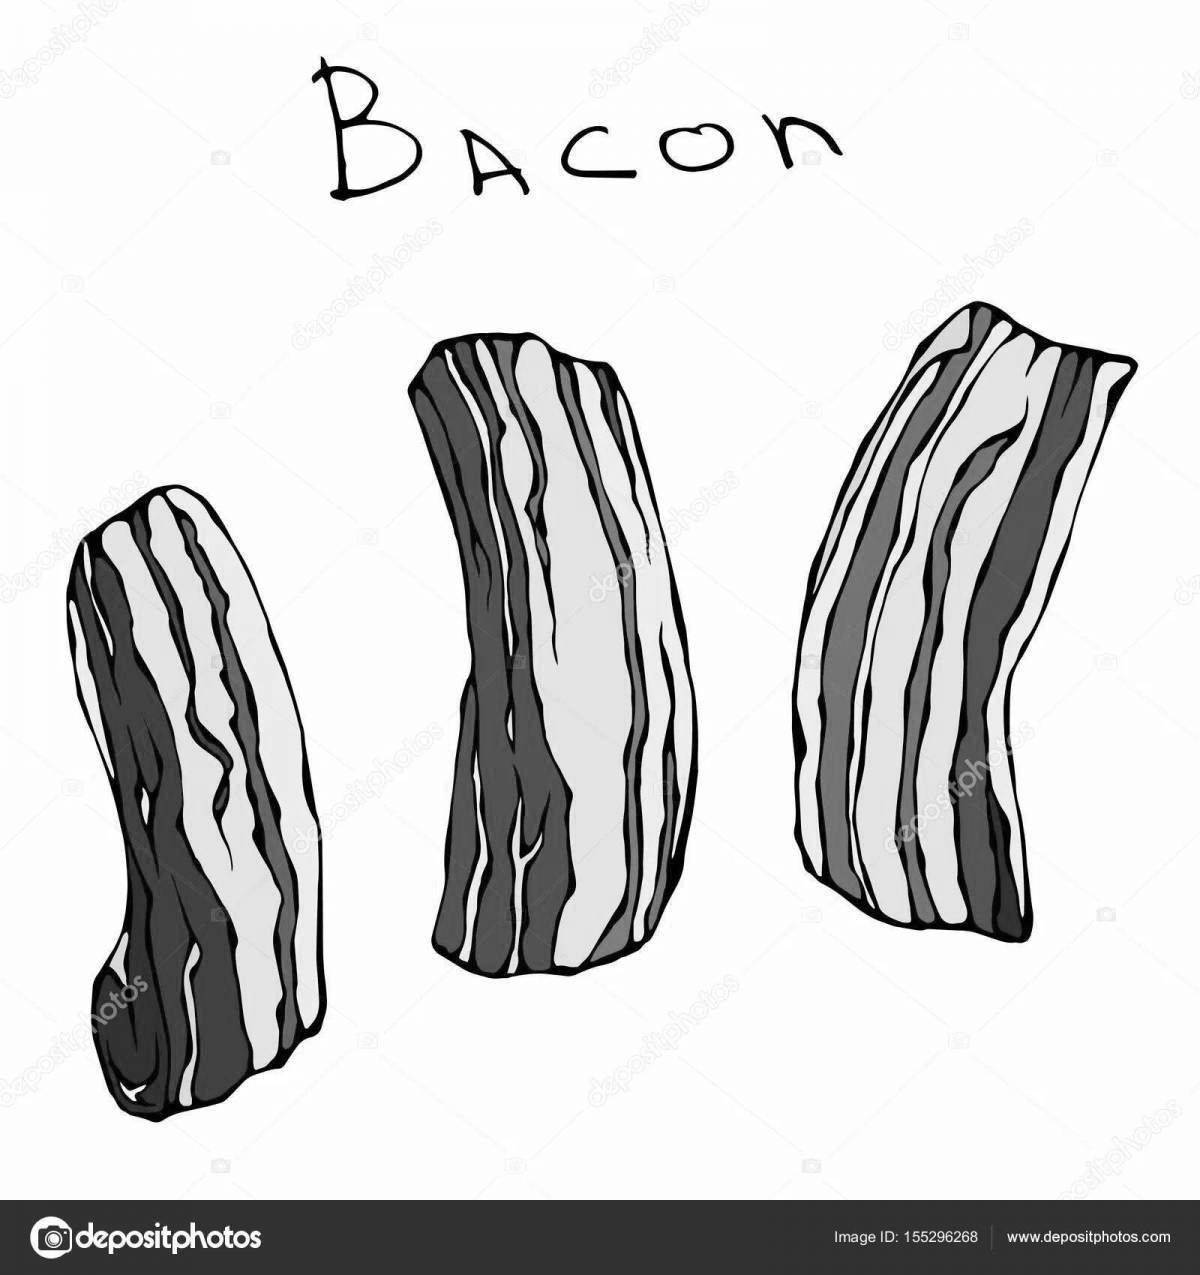 Delightful bacon coloring book